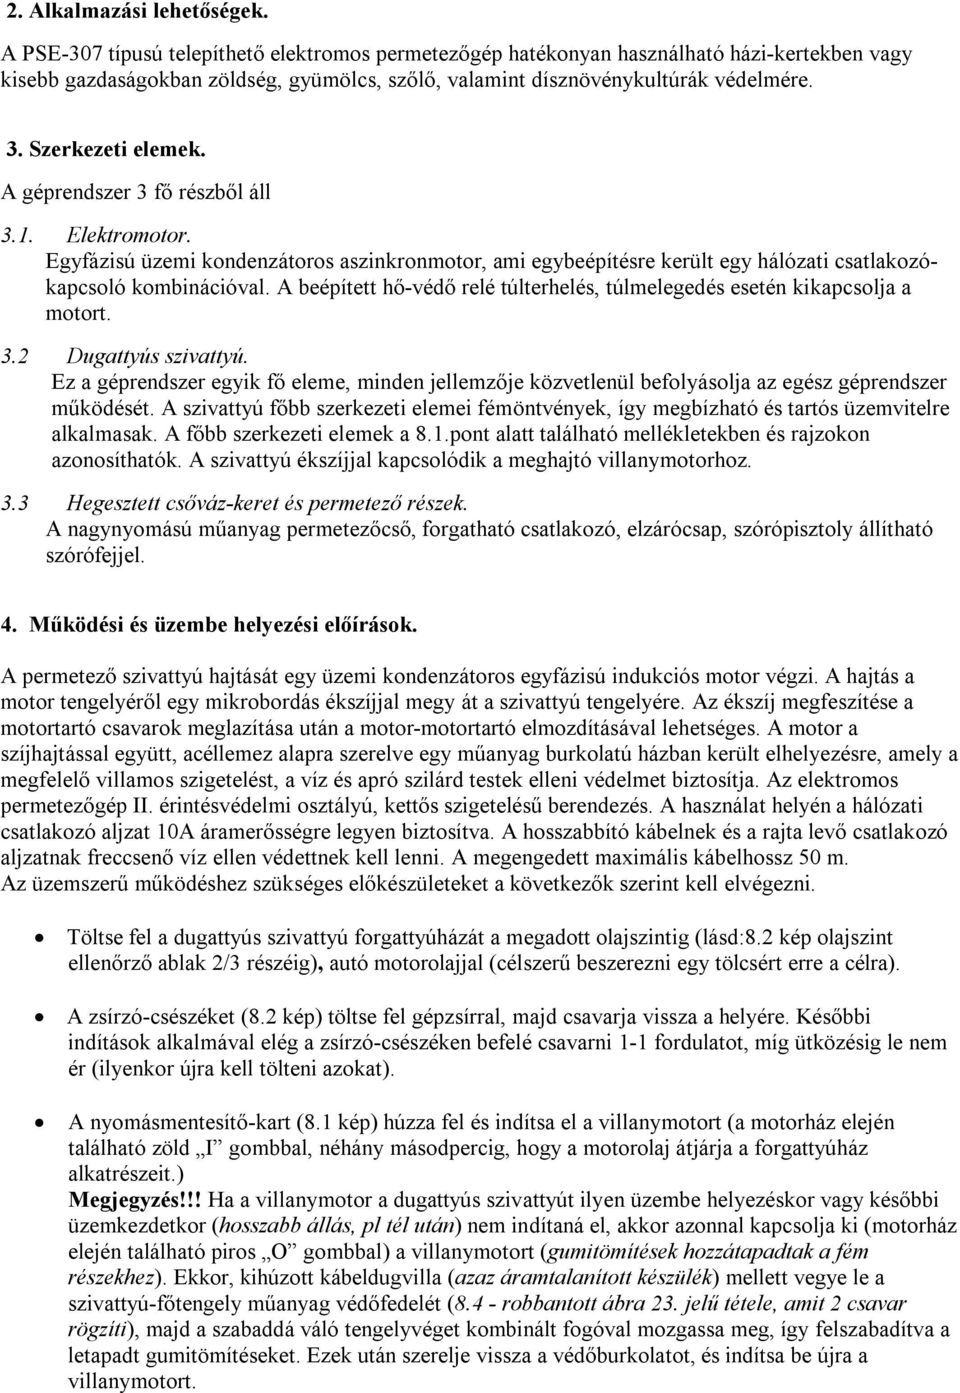 TELEPÍTHETŐ ELEKTROMOS PERMETEZŐ-SZIVATTYÚ - PDF Ingyenes letöltés